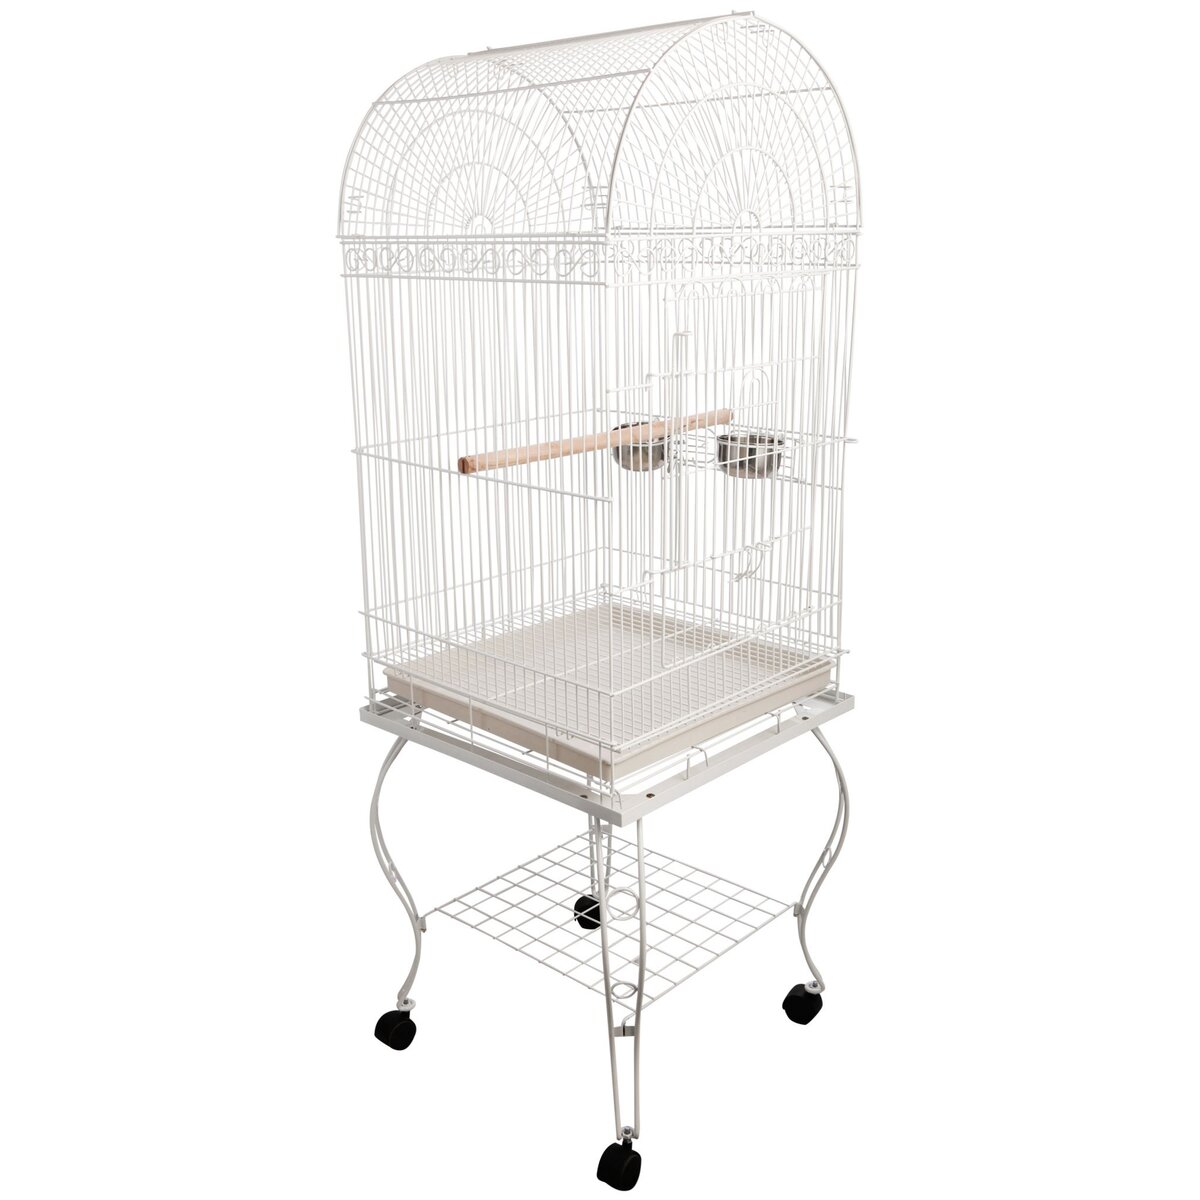 PAWHUT Grande volière cage à oiseaux design avec mangeoire perchoir suspendu plateau amovible étagère et roulettes 54L x 54l x 153H cm blanc